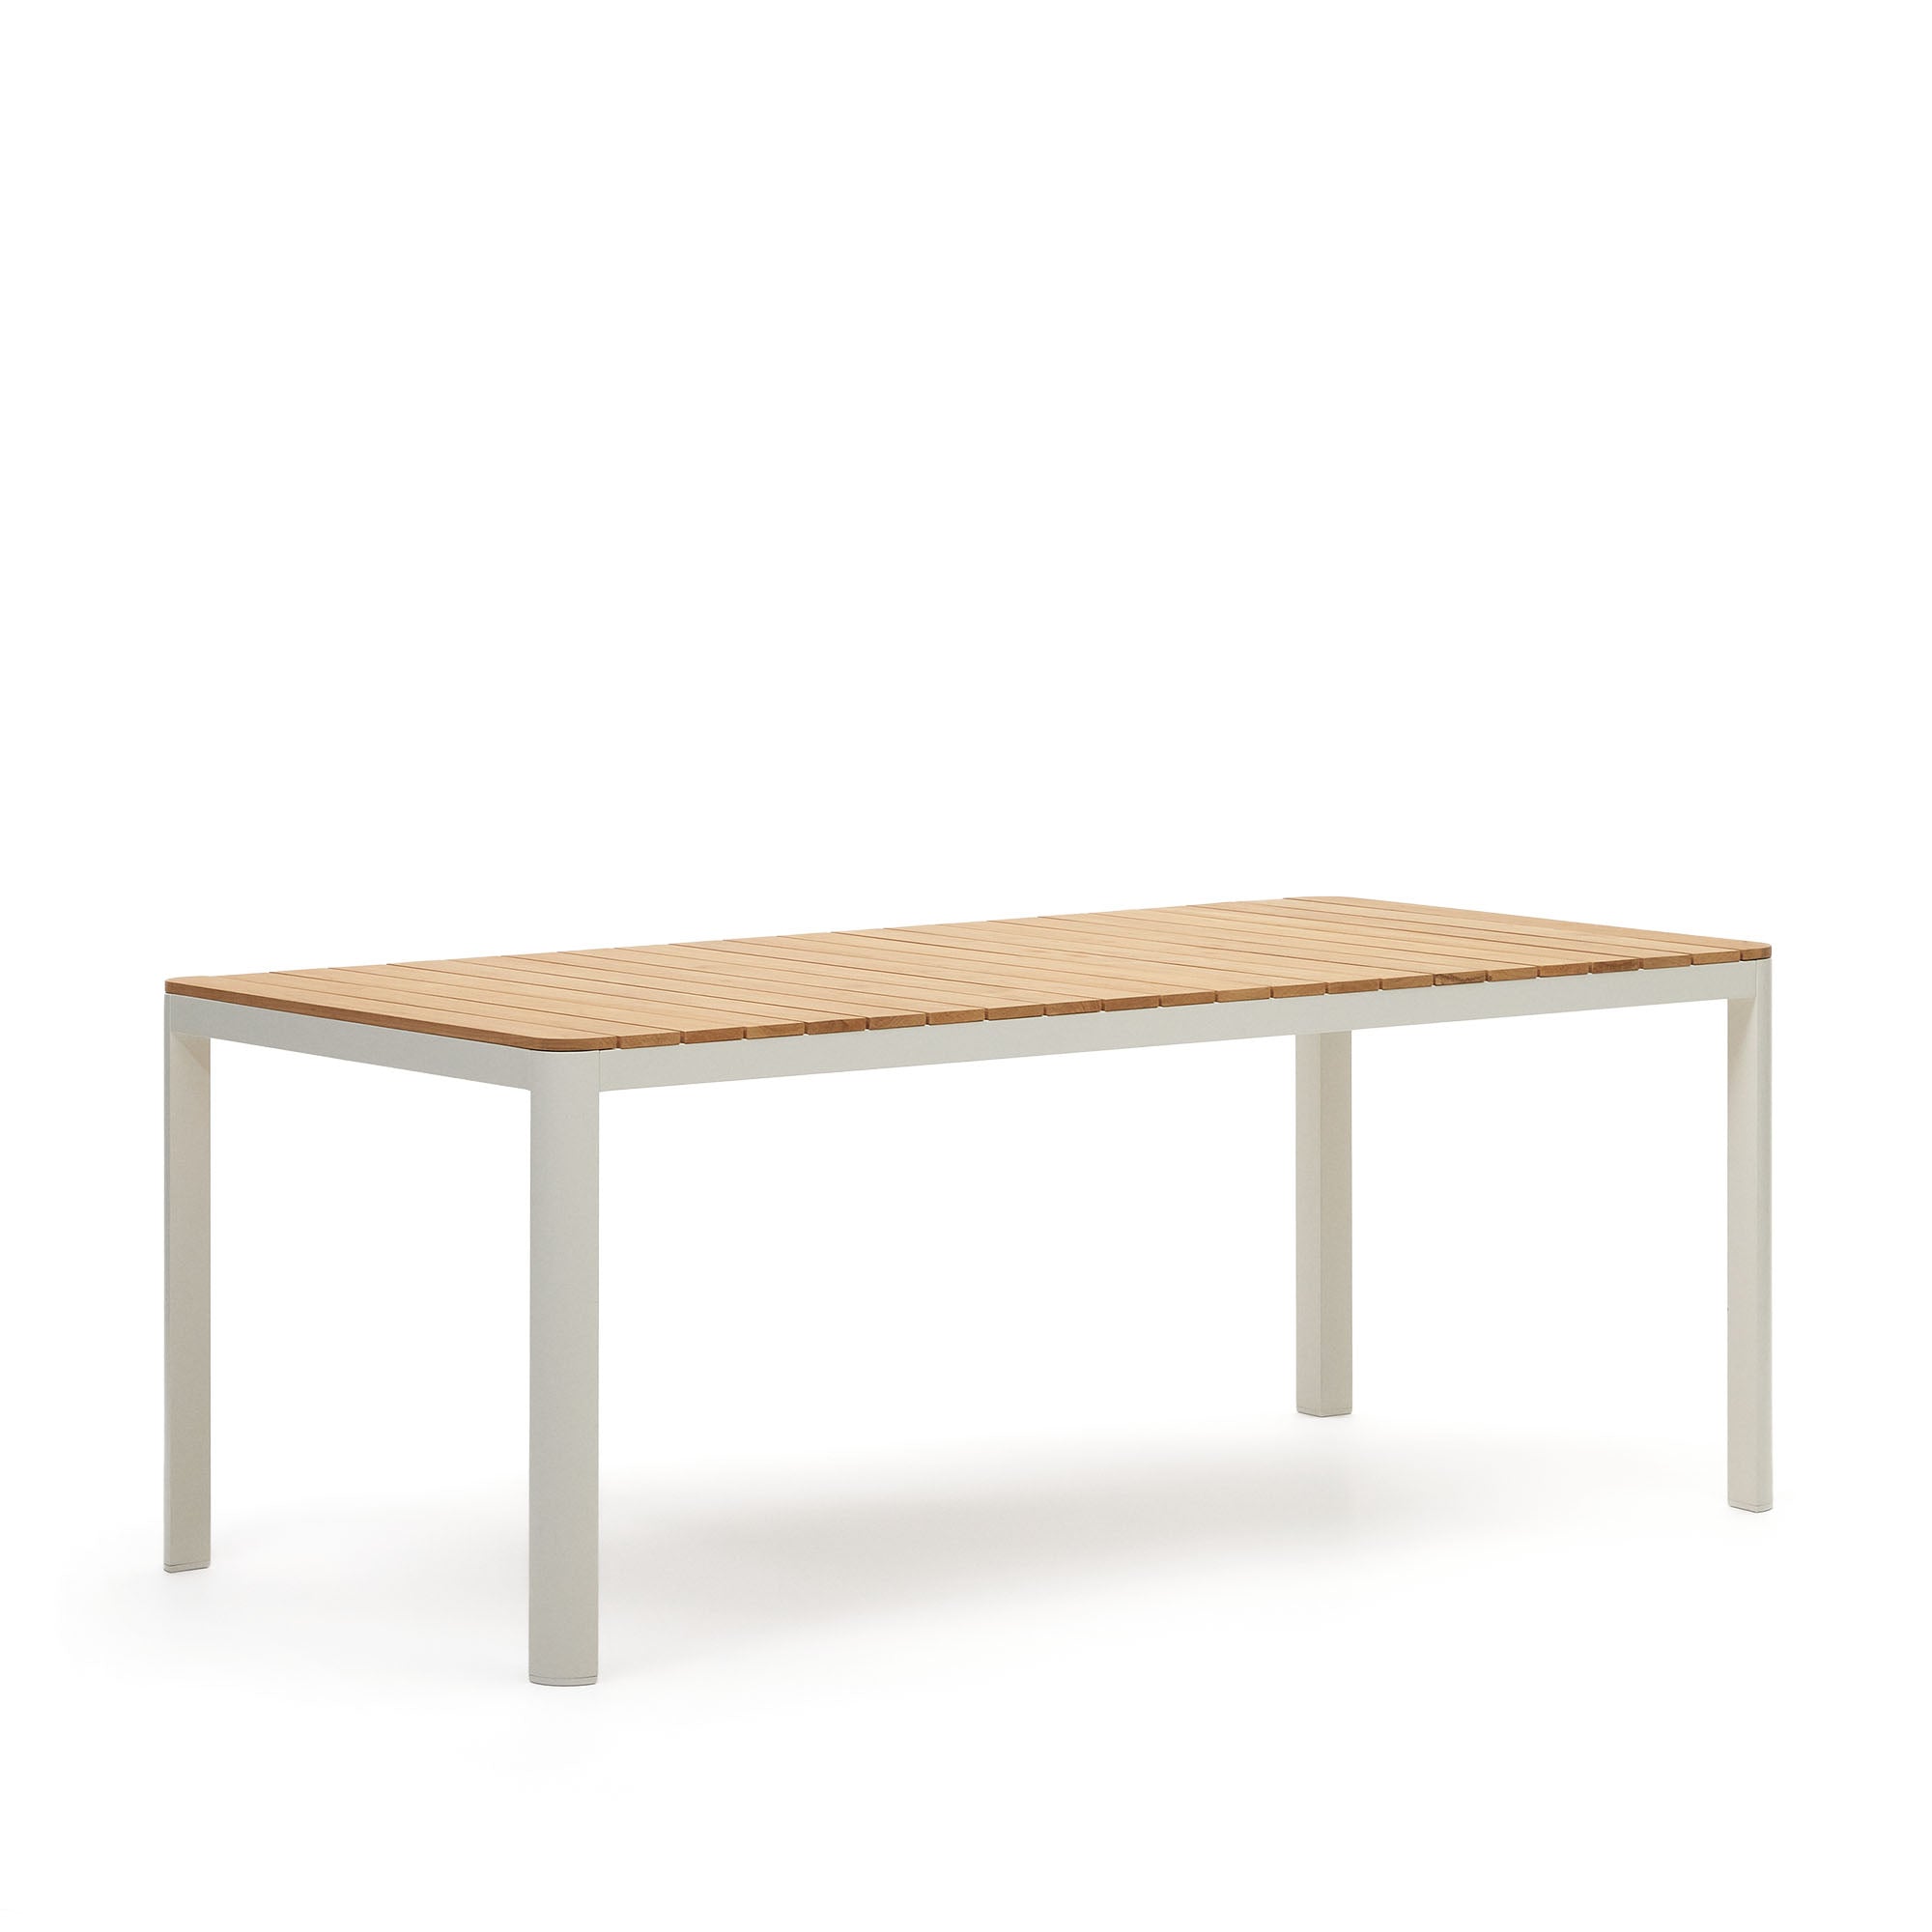 Bona alumínium és tömör teakfa asztal, 100%-ban kültéri használatra alkalmas, fehér kivitelben, 200 x 100 cm